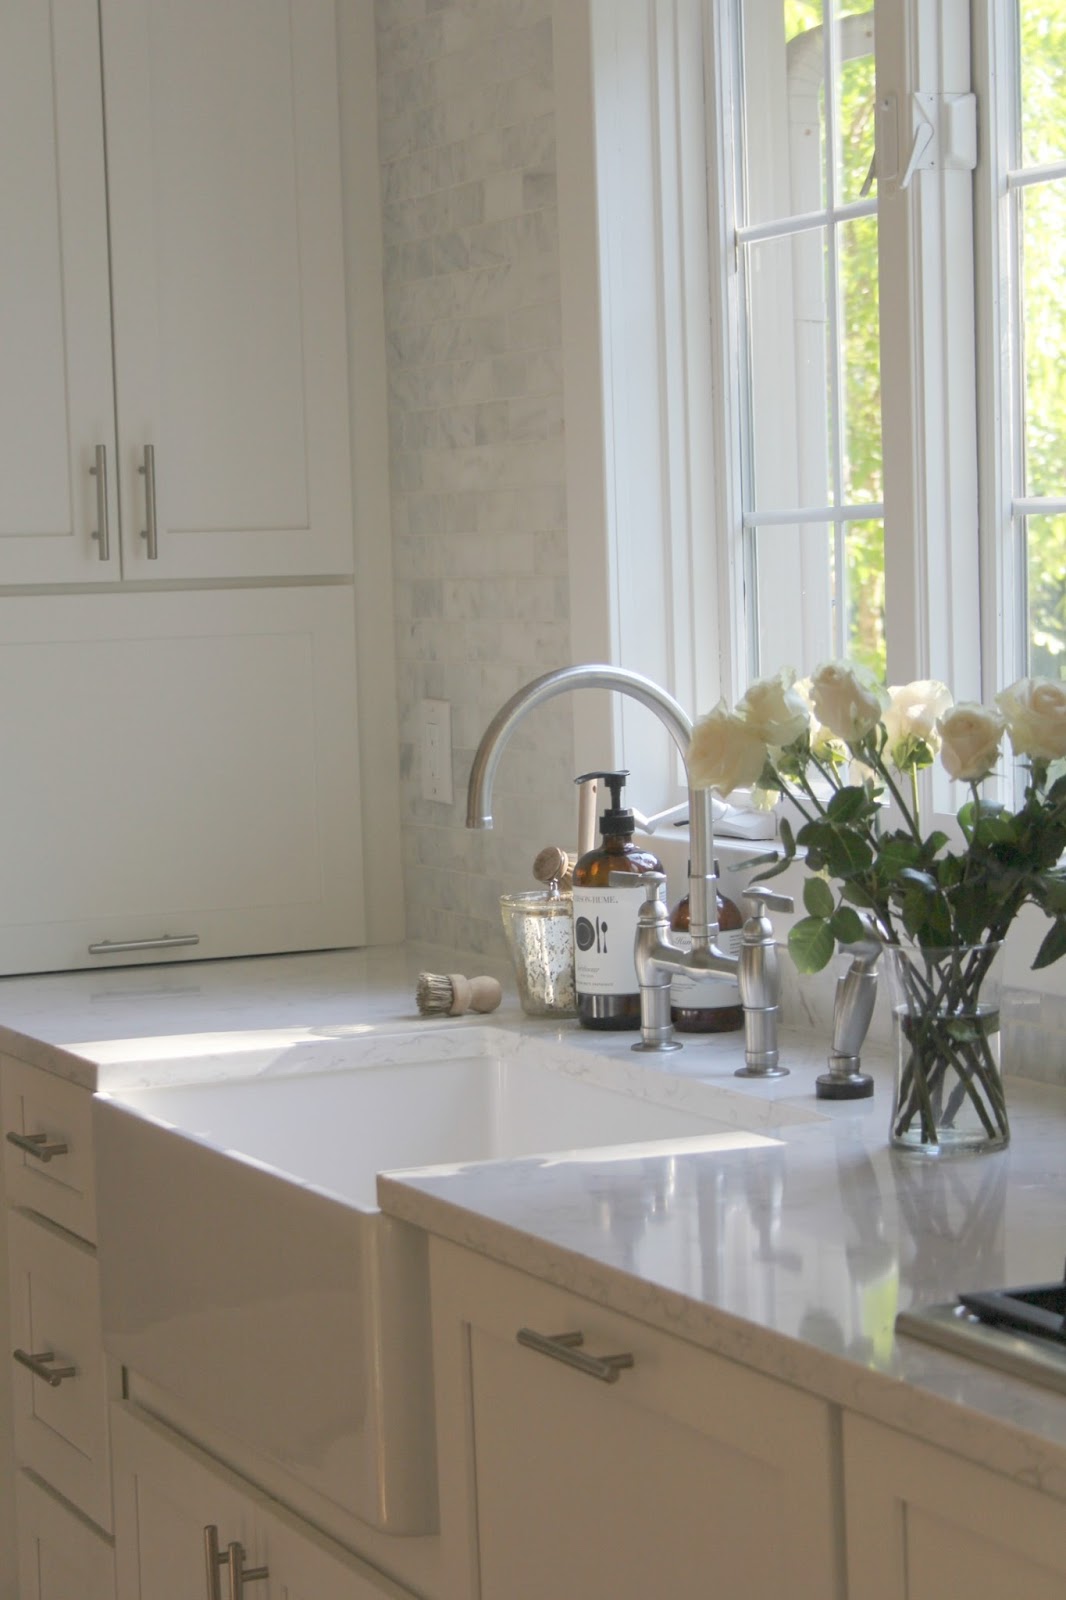 White kitchen with farm sink and serene decor. #hellolovelystudio #kitchen #farmsink